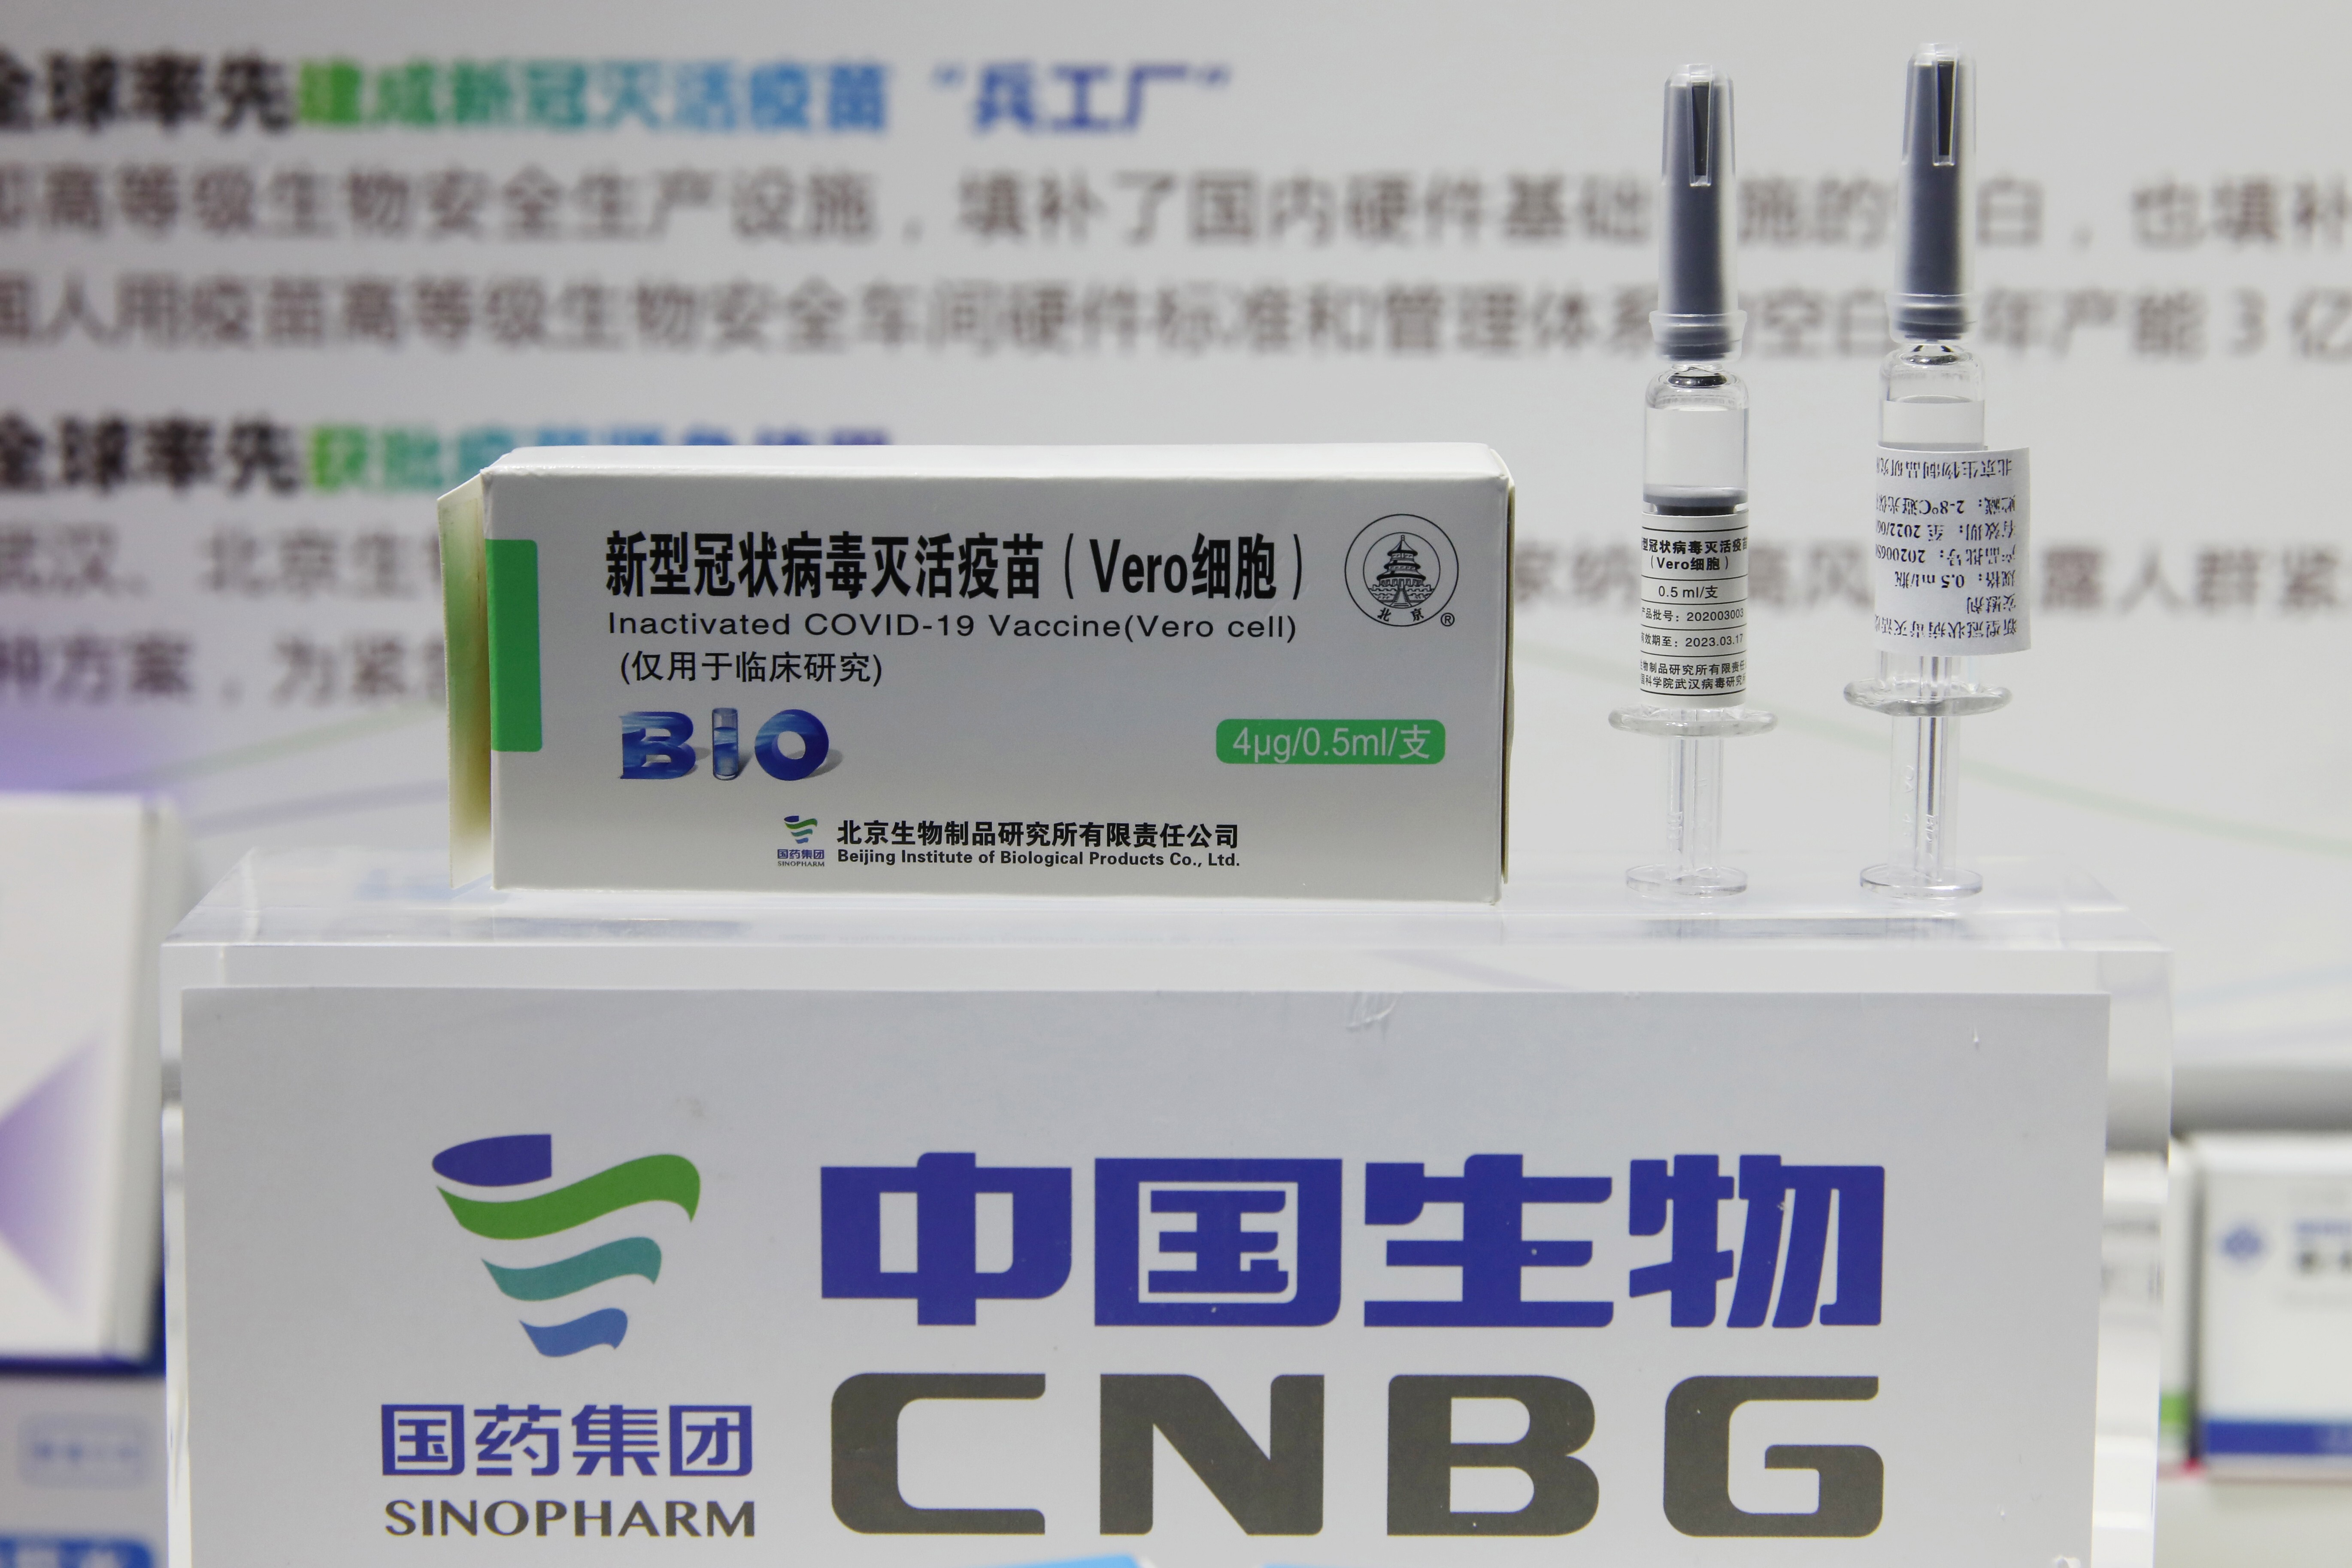 Вакцины китая. Vero Cell Sinopharm. Covid-19 вакцина китайская. Covid-19 vaccine (Vero Cell) inactivated. Китайская вакцина от коронавируса.